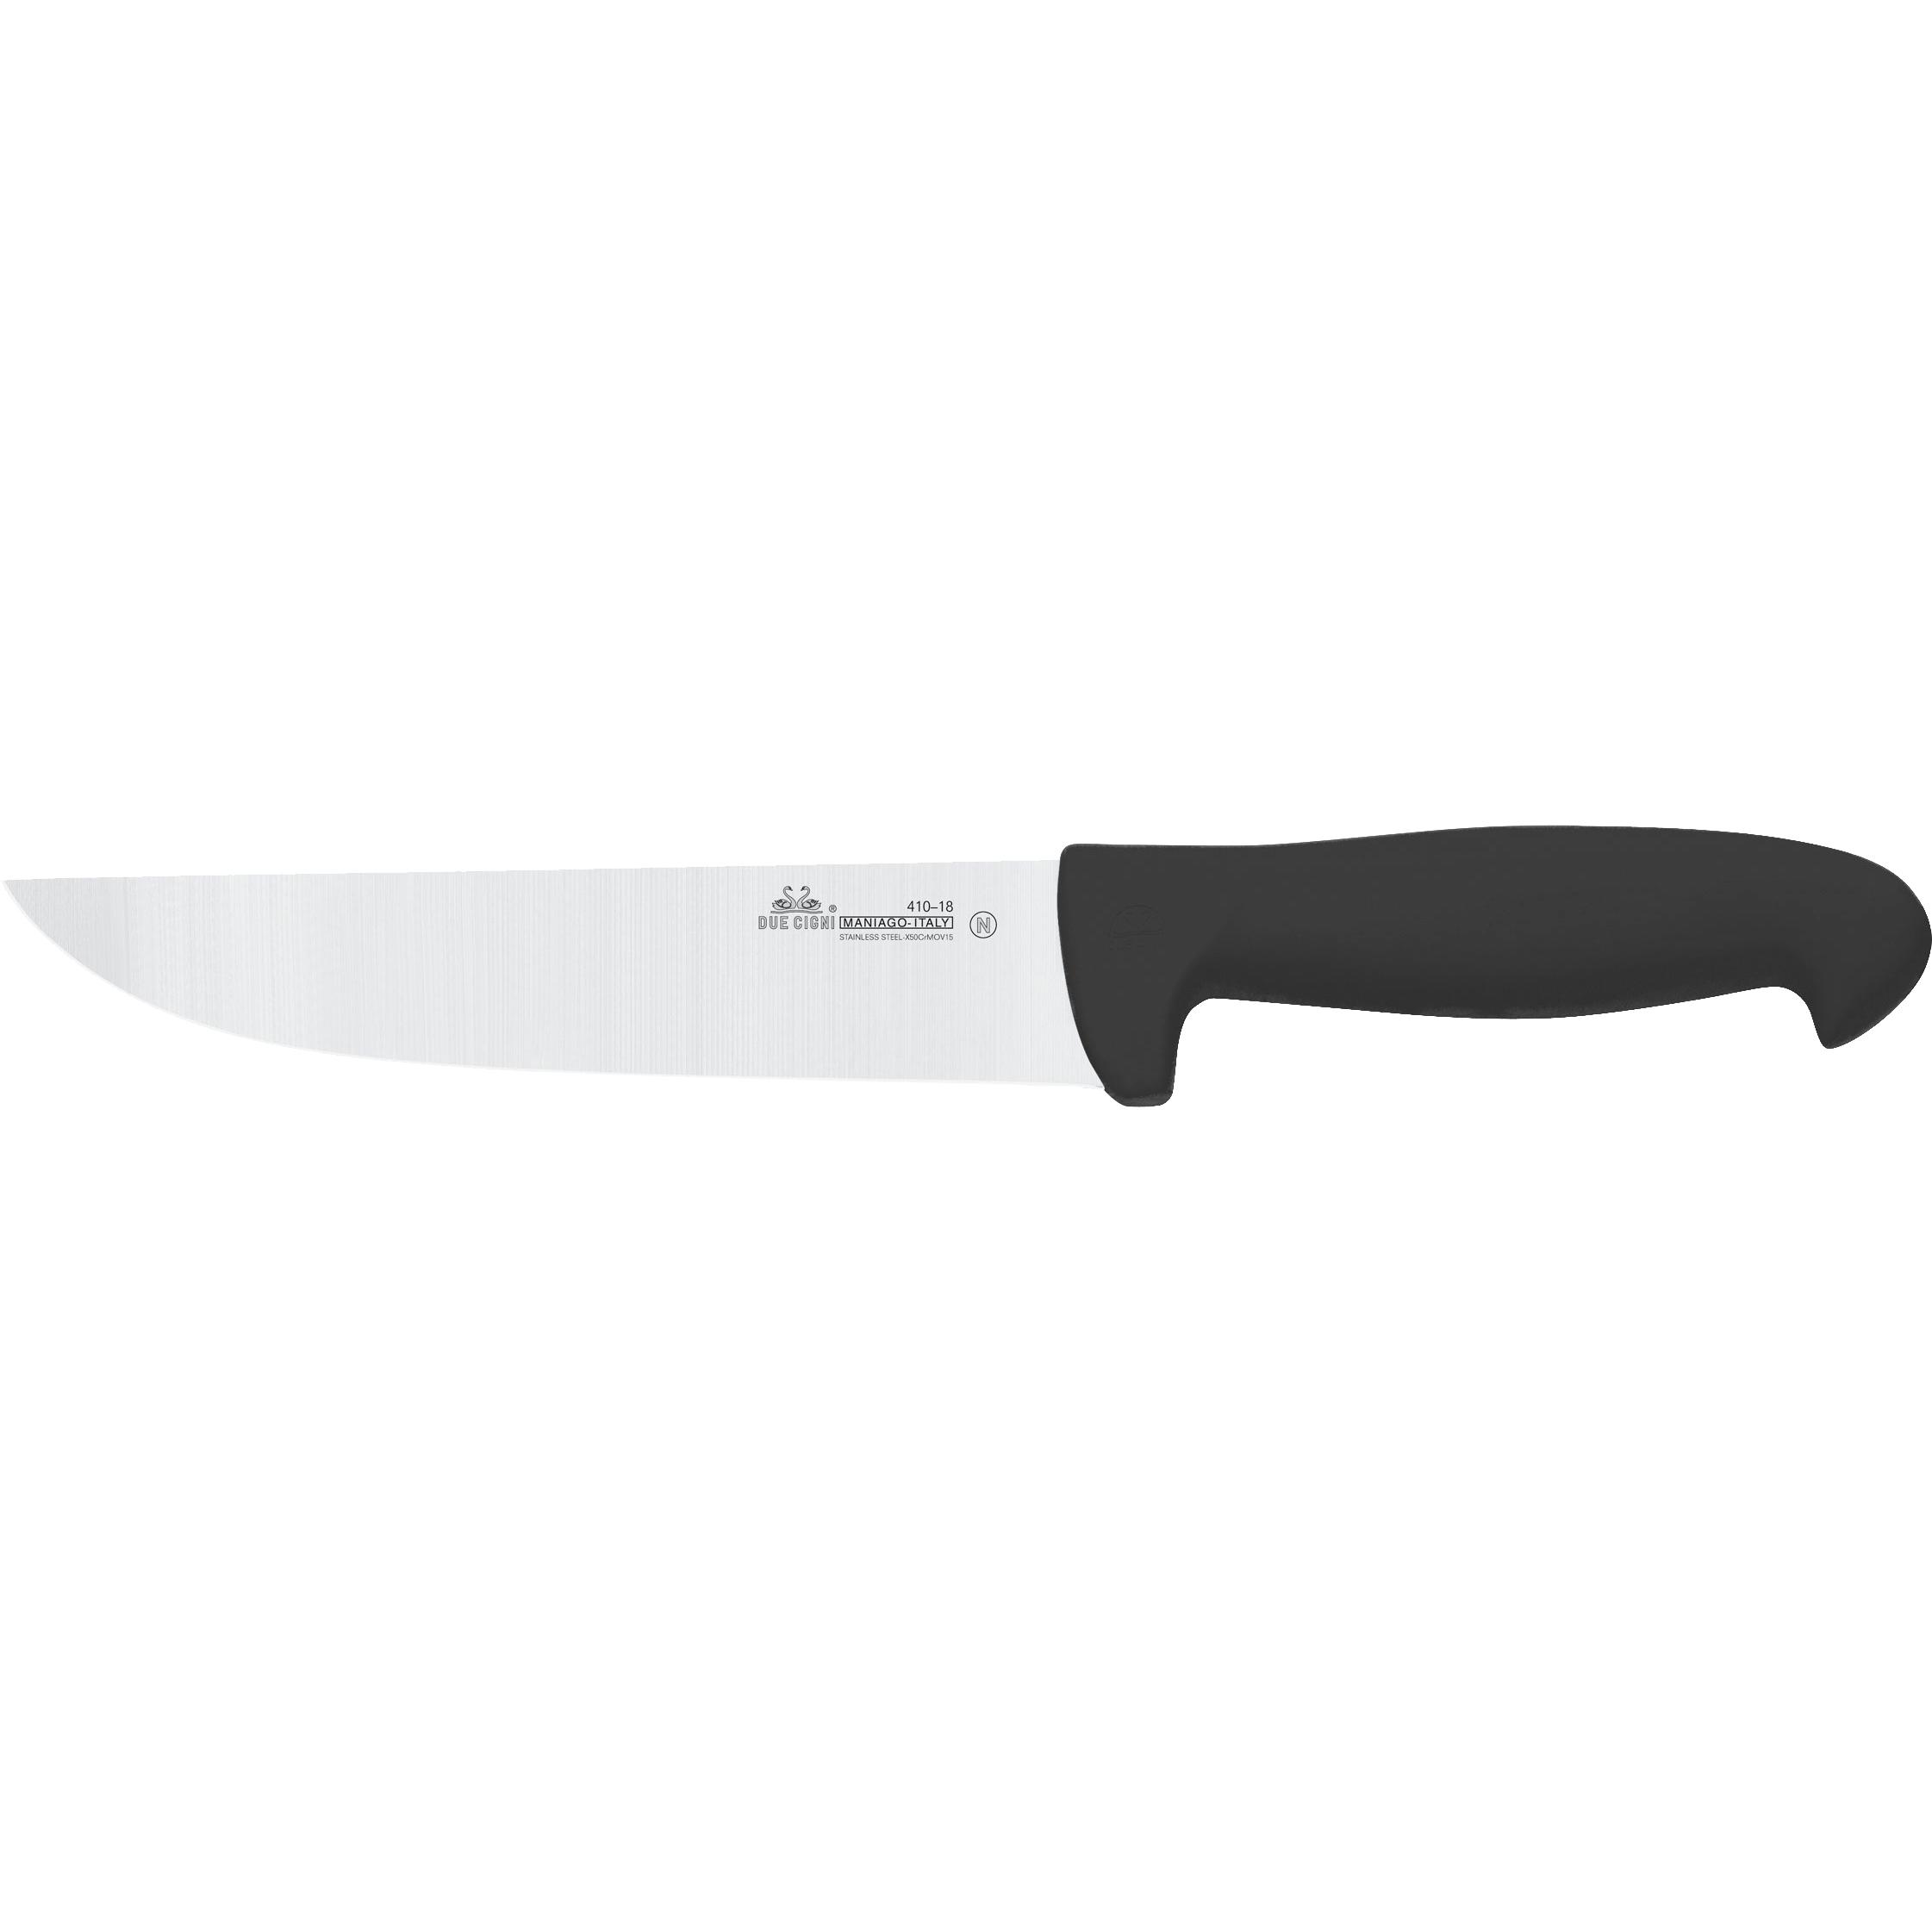 Ніж кухонний Due Cigni Professional Butcher Knife 160 мм. Колір - чорний 2C 410/18 N 1904.01.00